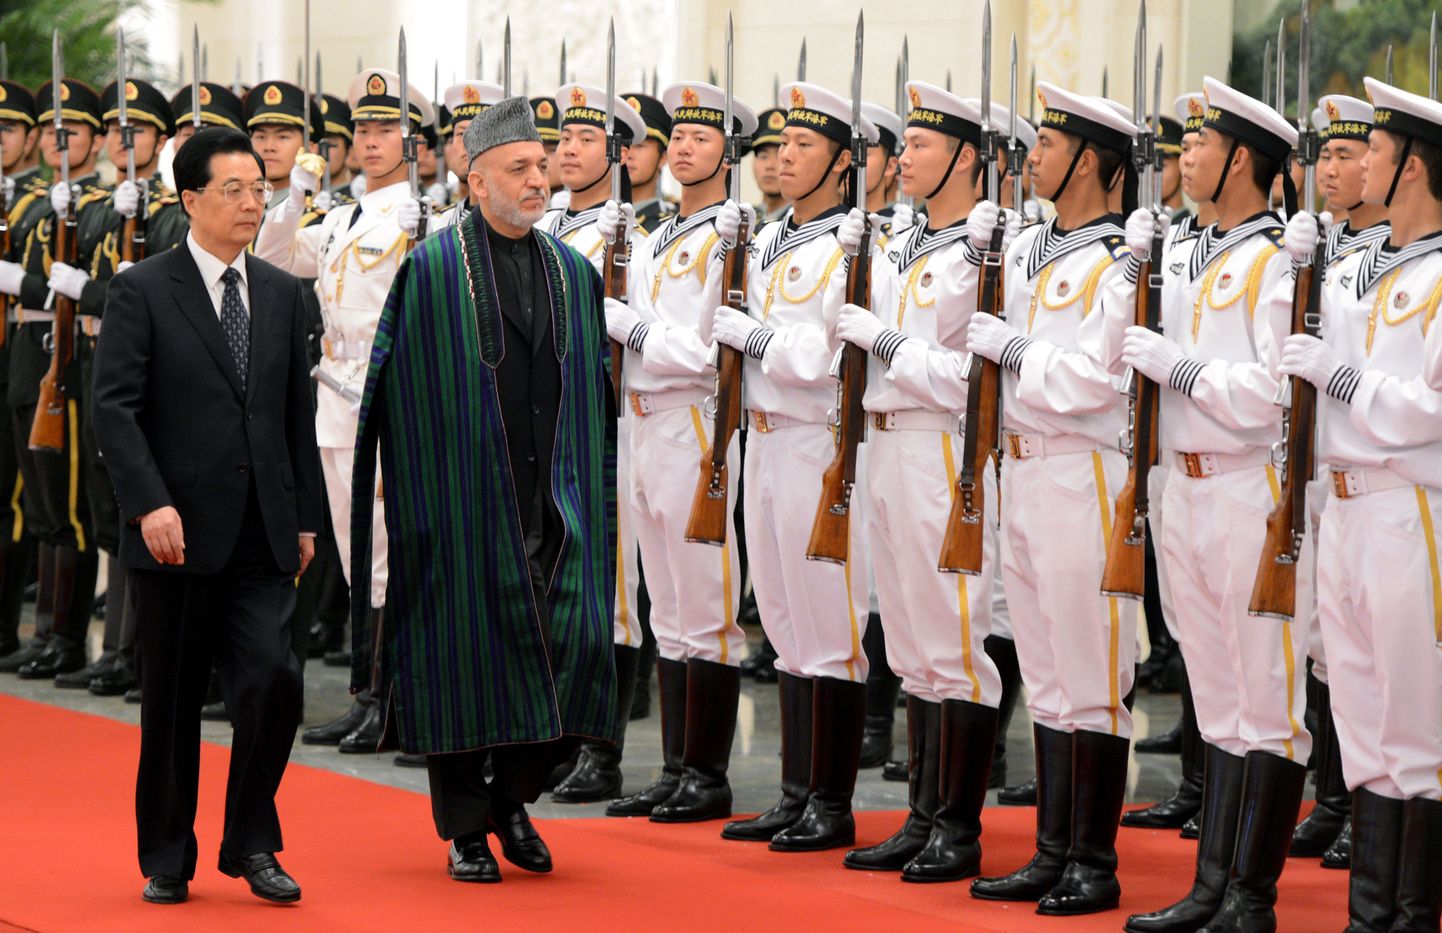 Hiina president Hu Jintao (vasakul) koos Afganistani riigipea Hamid Karzaiga täna Pekingis.